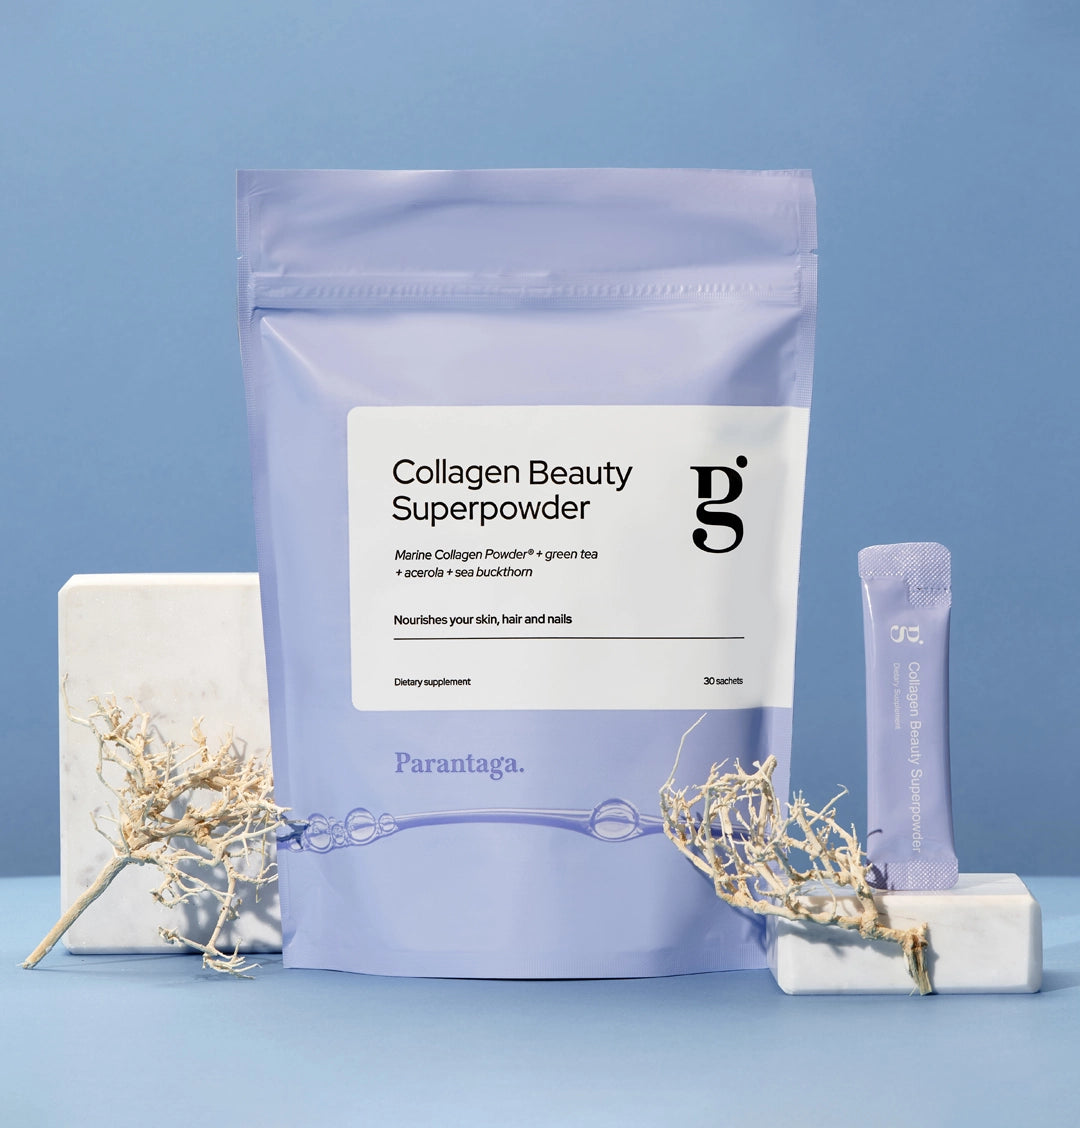 Collagen Beauty Superpowder (de)